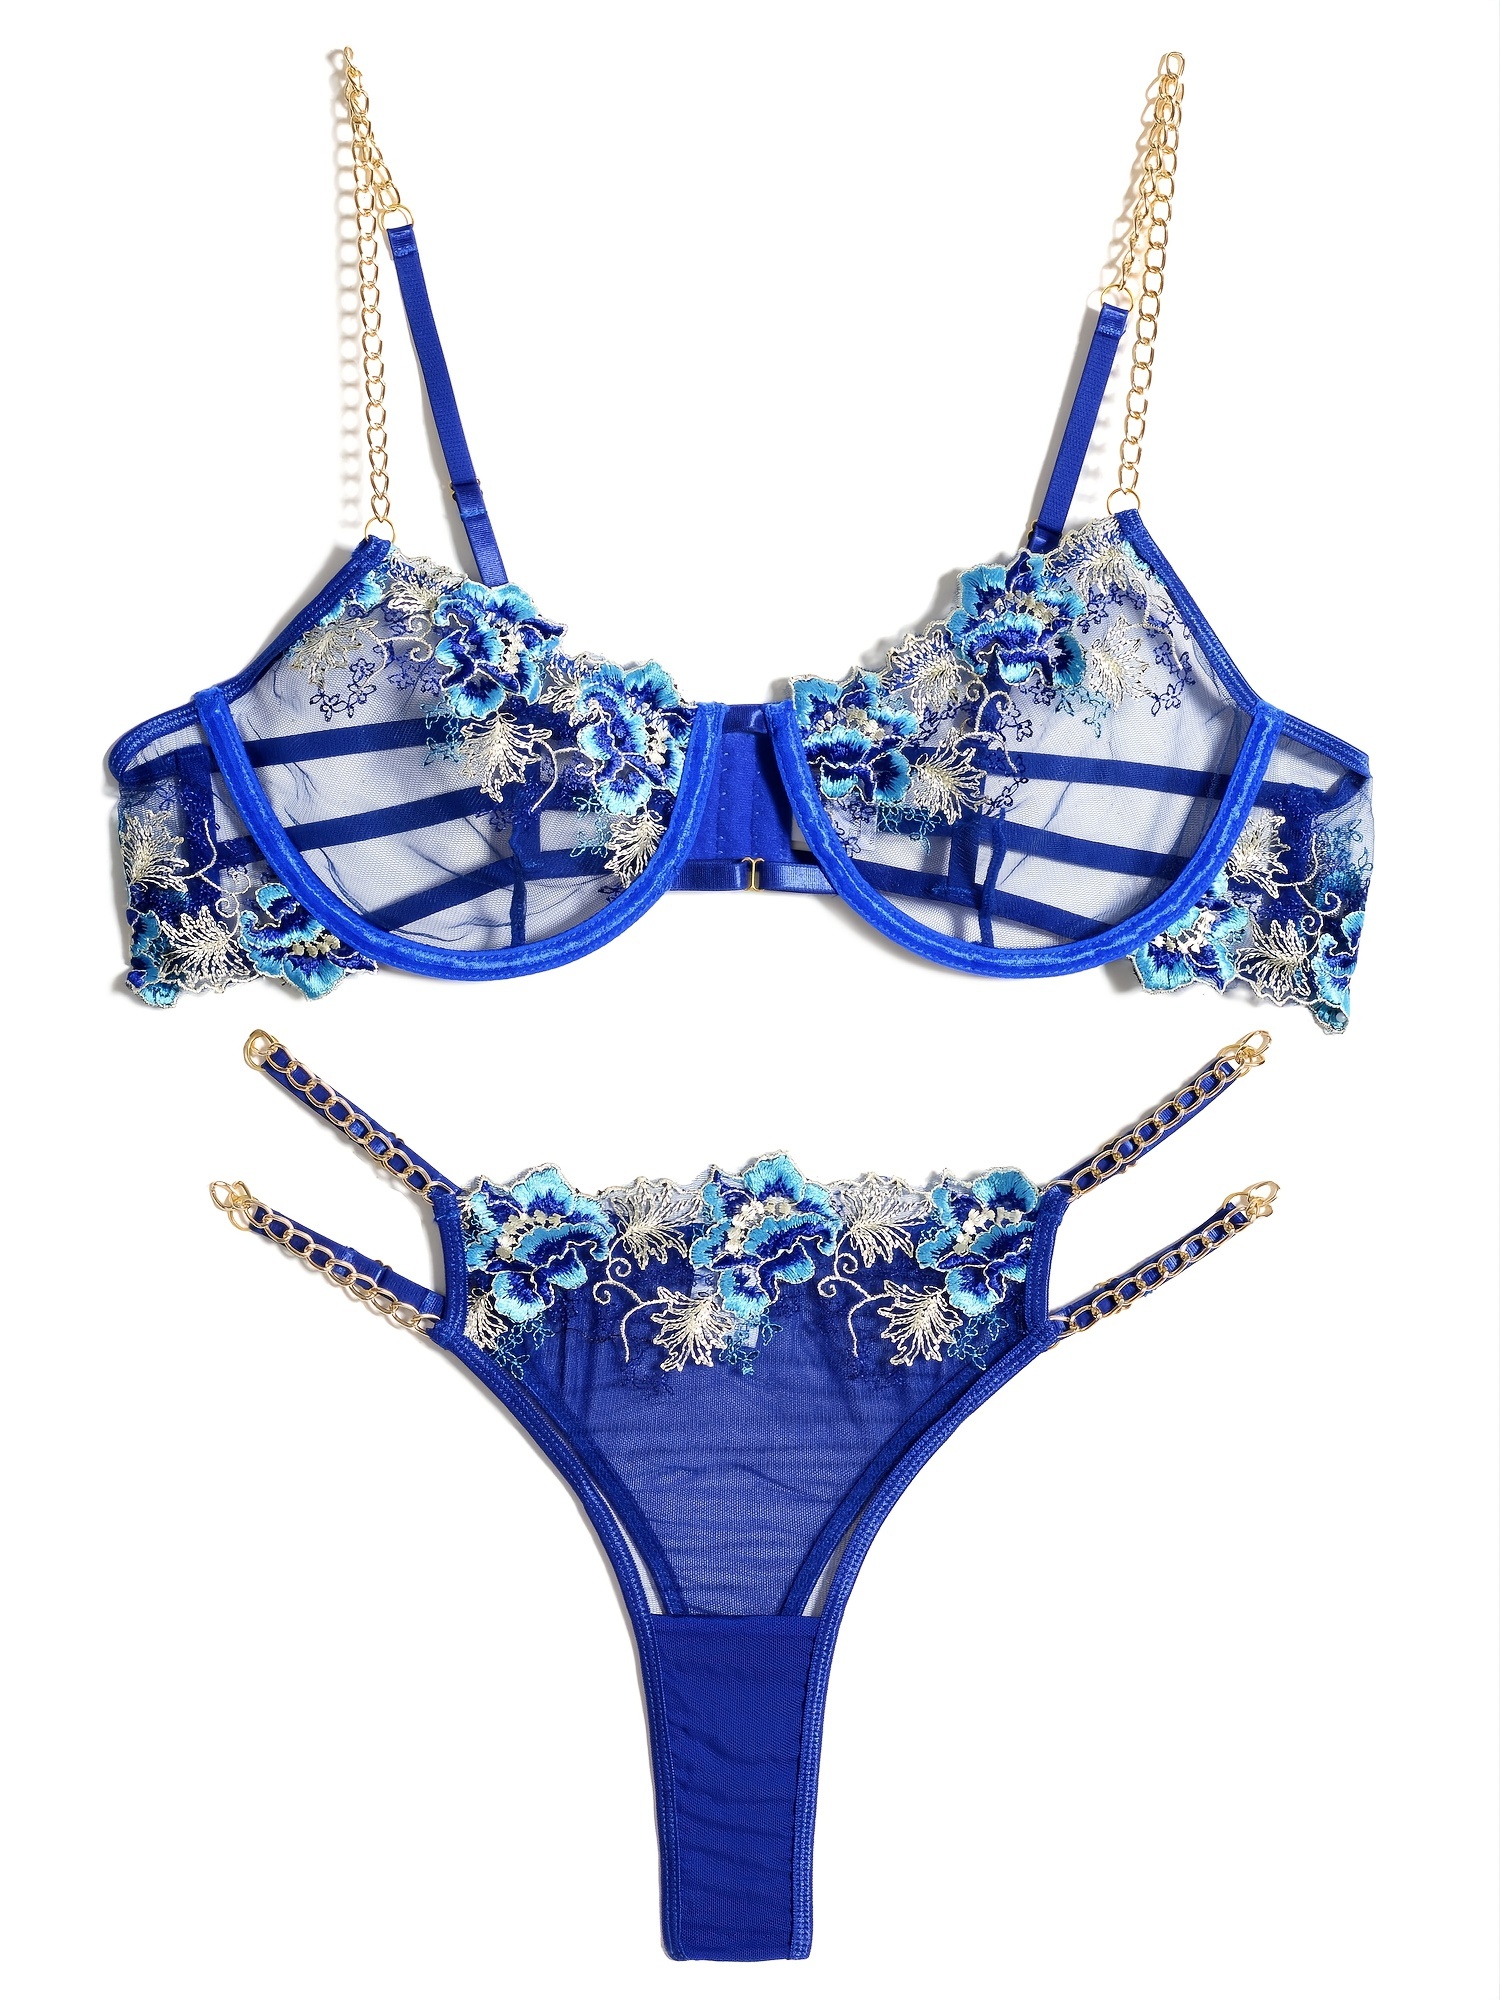 Blue Bra Set Sensual Lingerie Woman Lace Floral Bra Set Plus Size